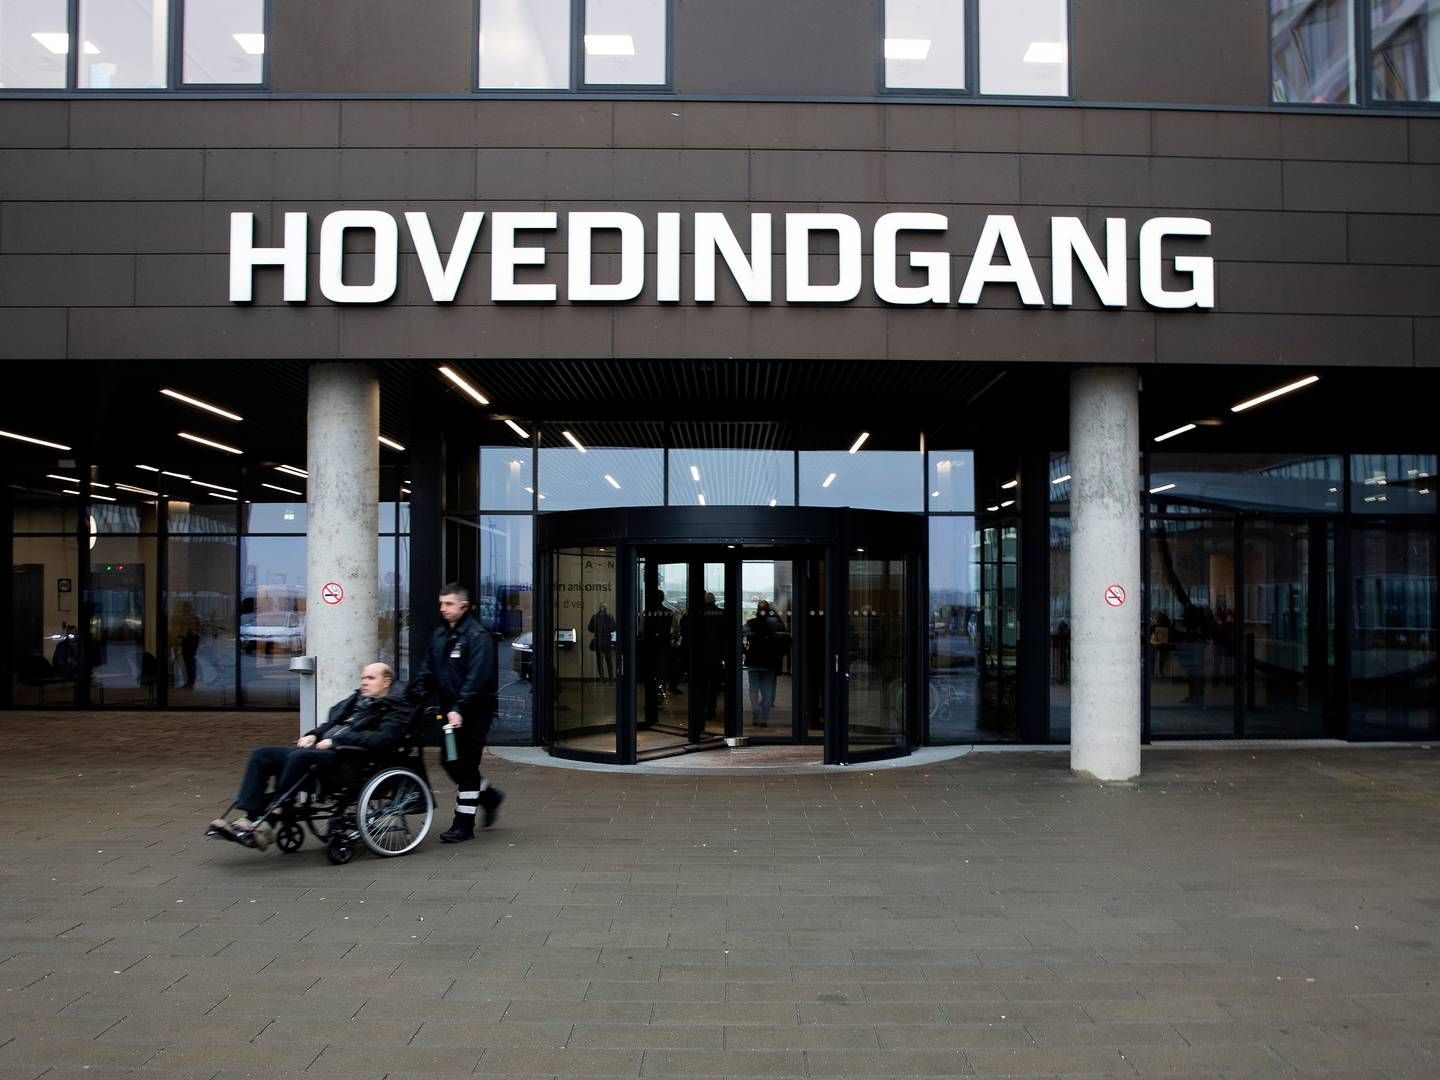 De danske hospitaler har svært ved at følge med de stigende udgifter til medicin. | Foto: Finn Frandsen